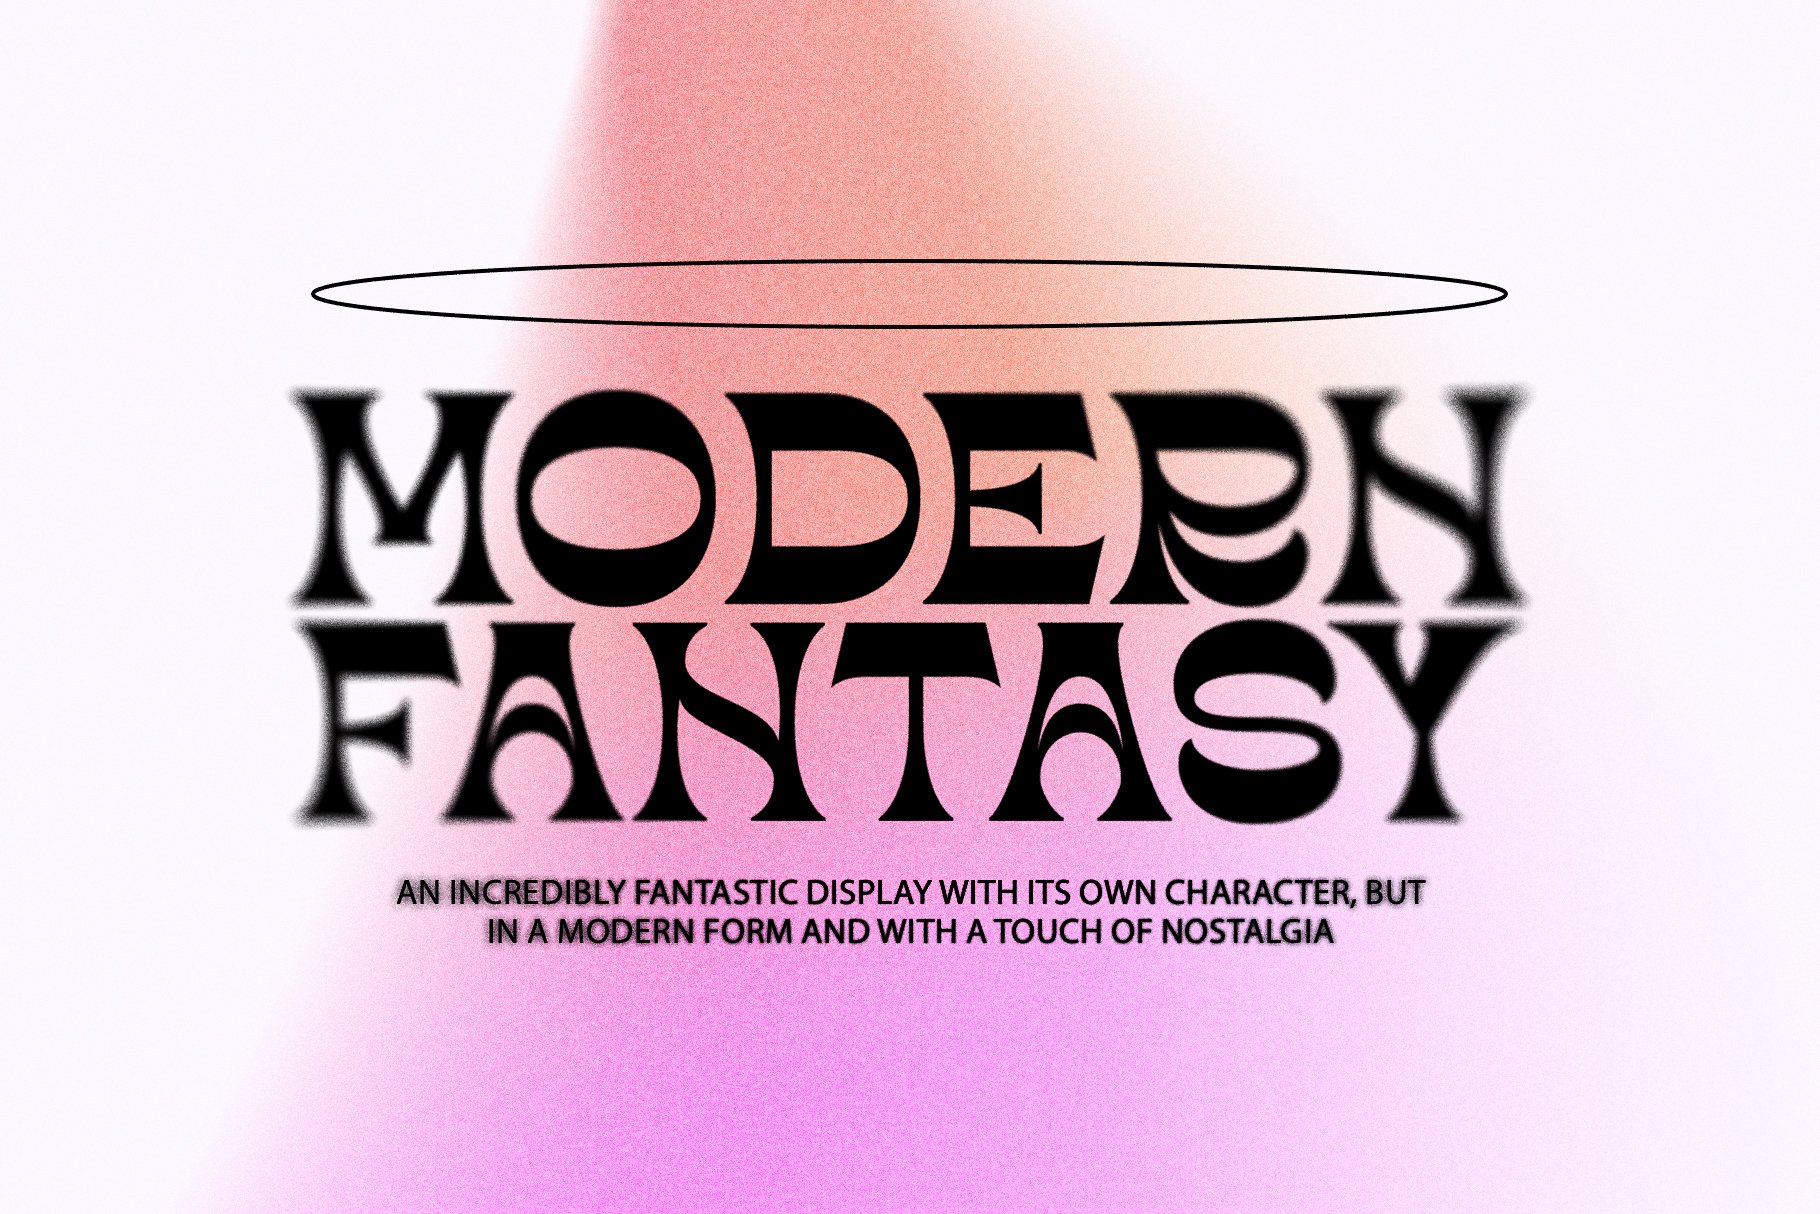 Modern Fantasy / Modern Serif cover image.